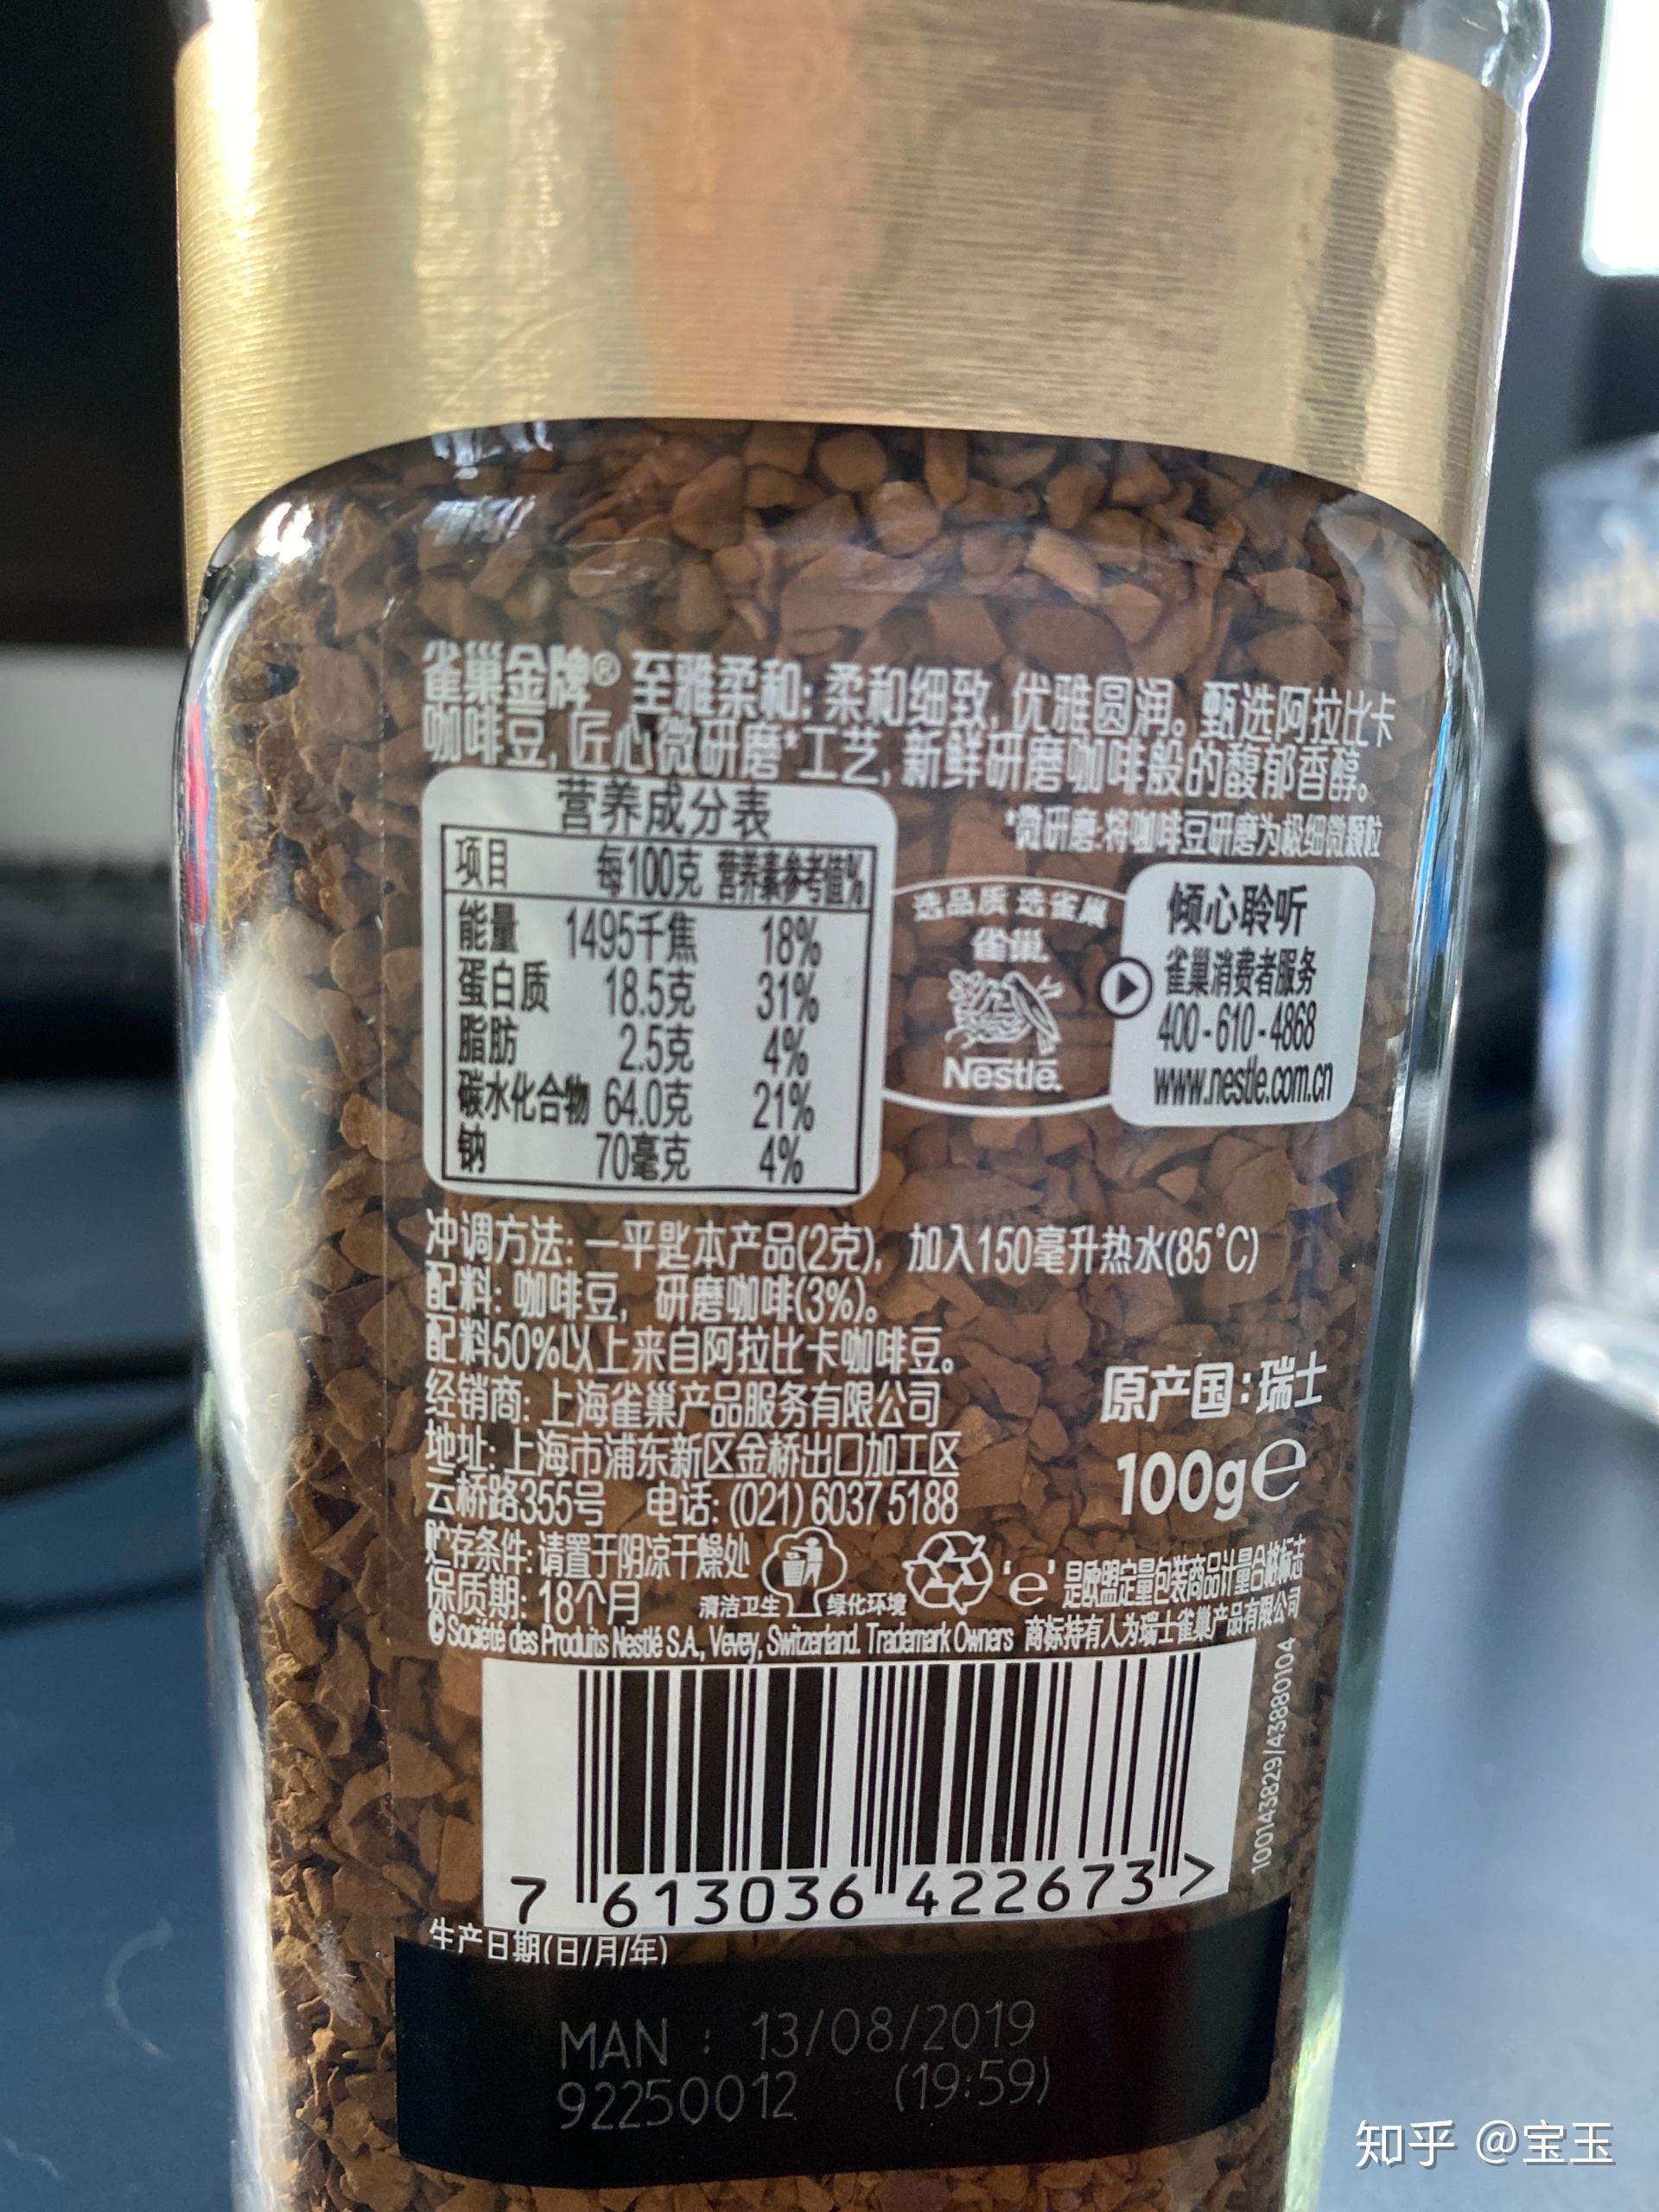 雀巢罐装咖啡配料表图片